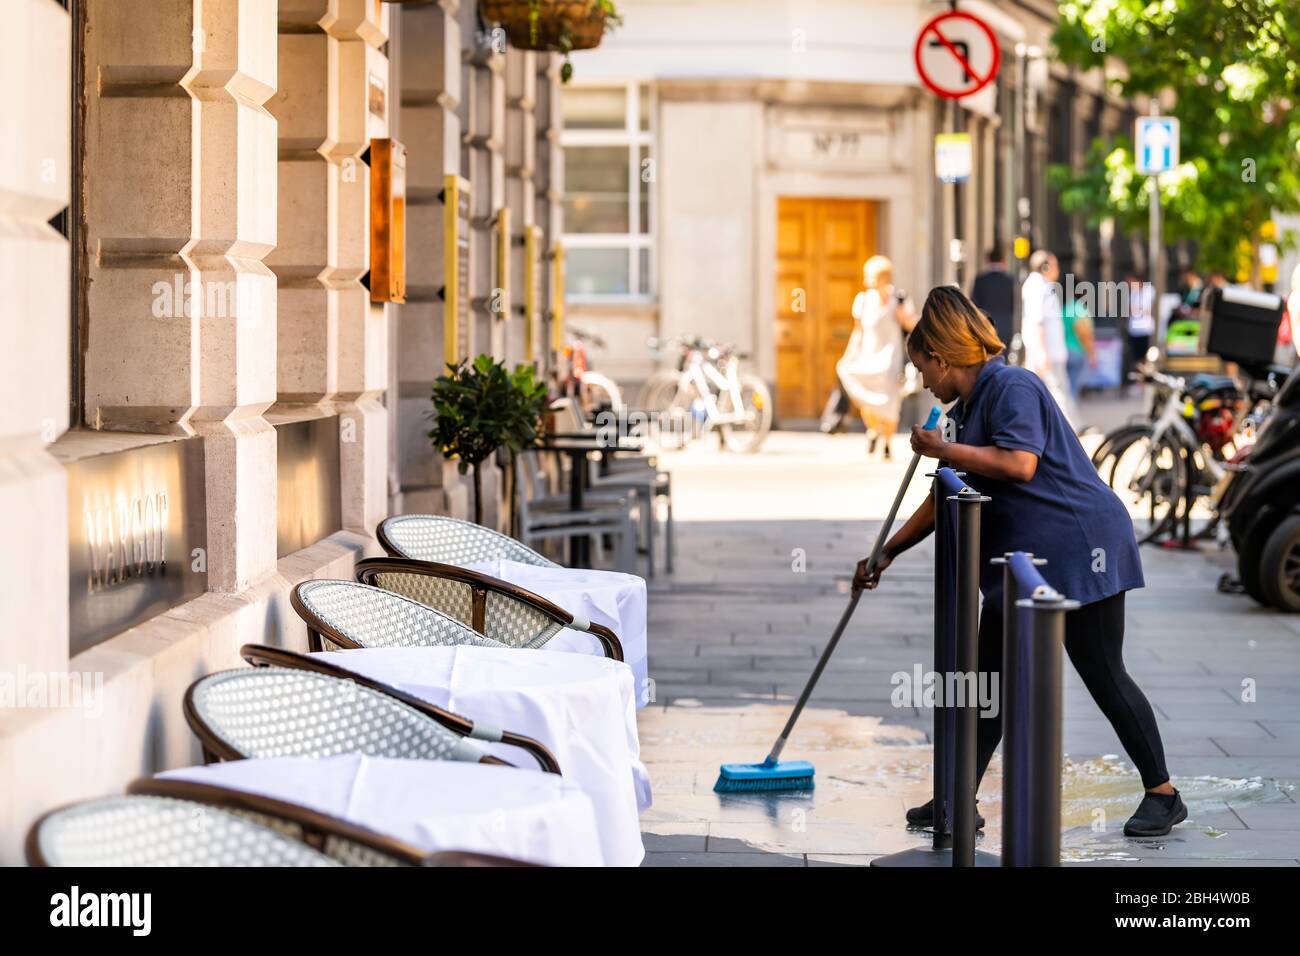 Londres, Royaume-Uni - 26 juin 2018 : une femme employée du restaurant un ouvrier nettoyant la rue au centre de la ville, en butant le sol humide pavé Banque D'Images